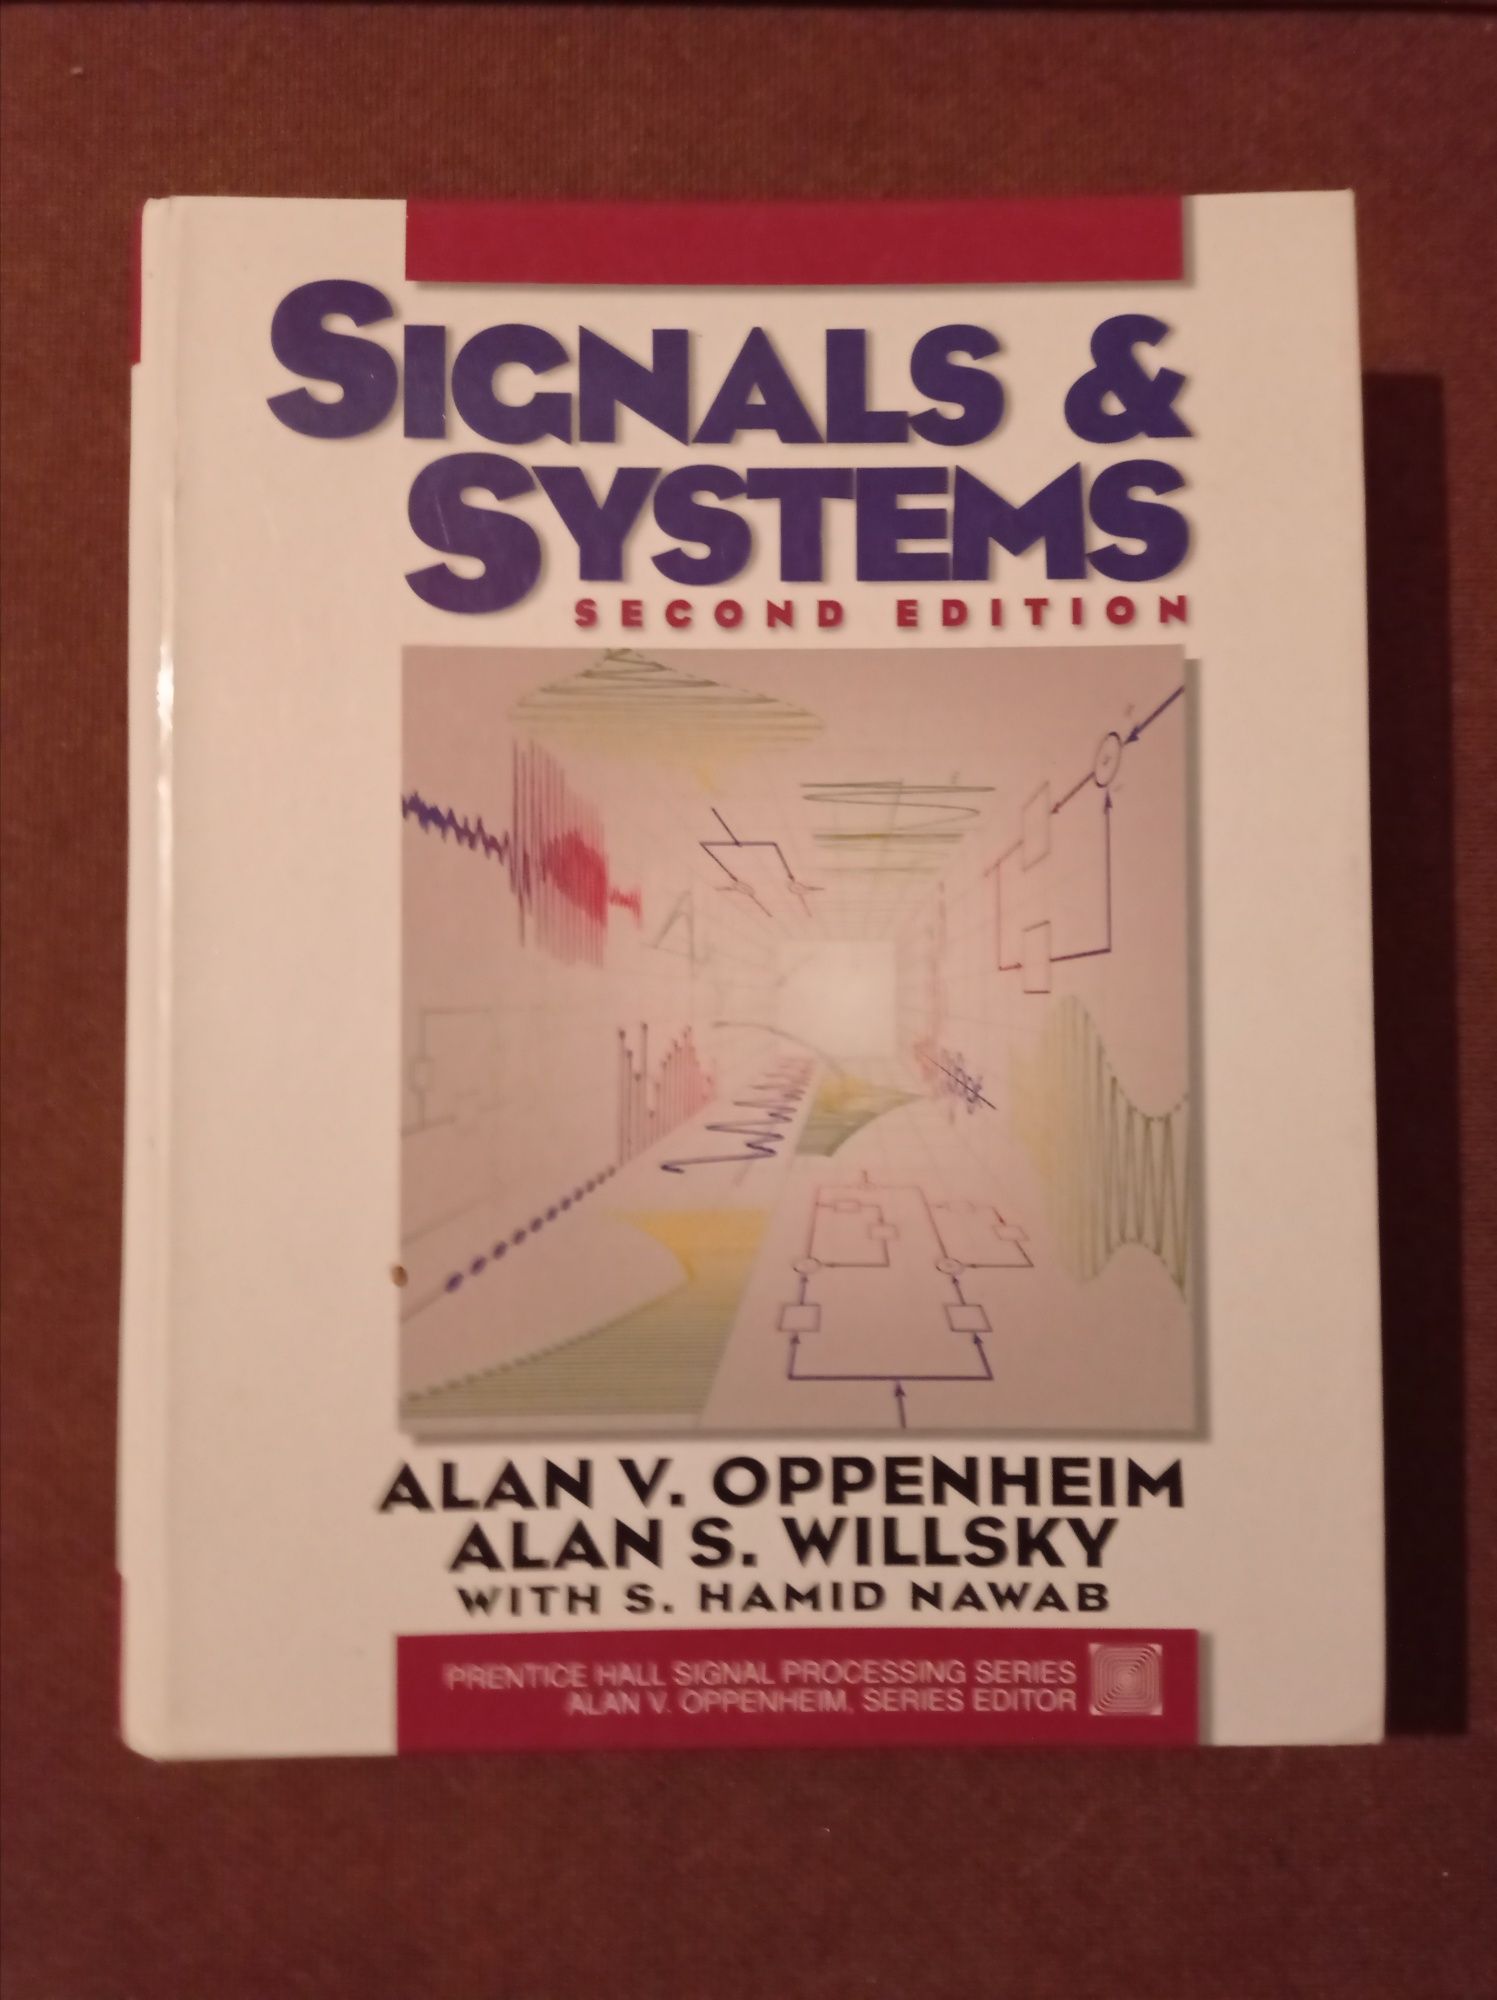 Livro " Signals & Systems" 2ª Edição